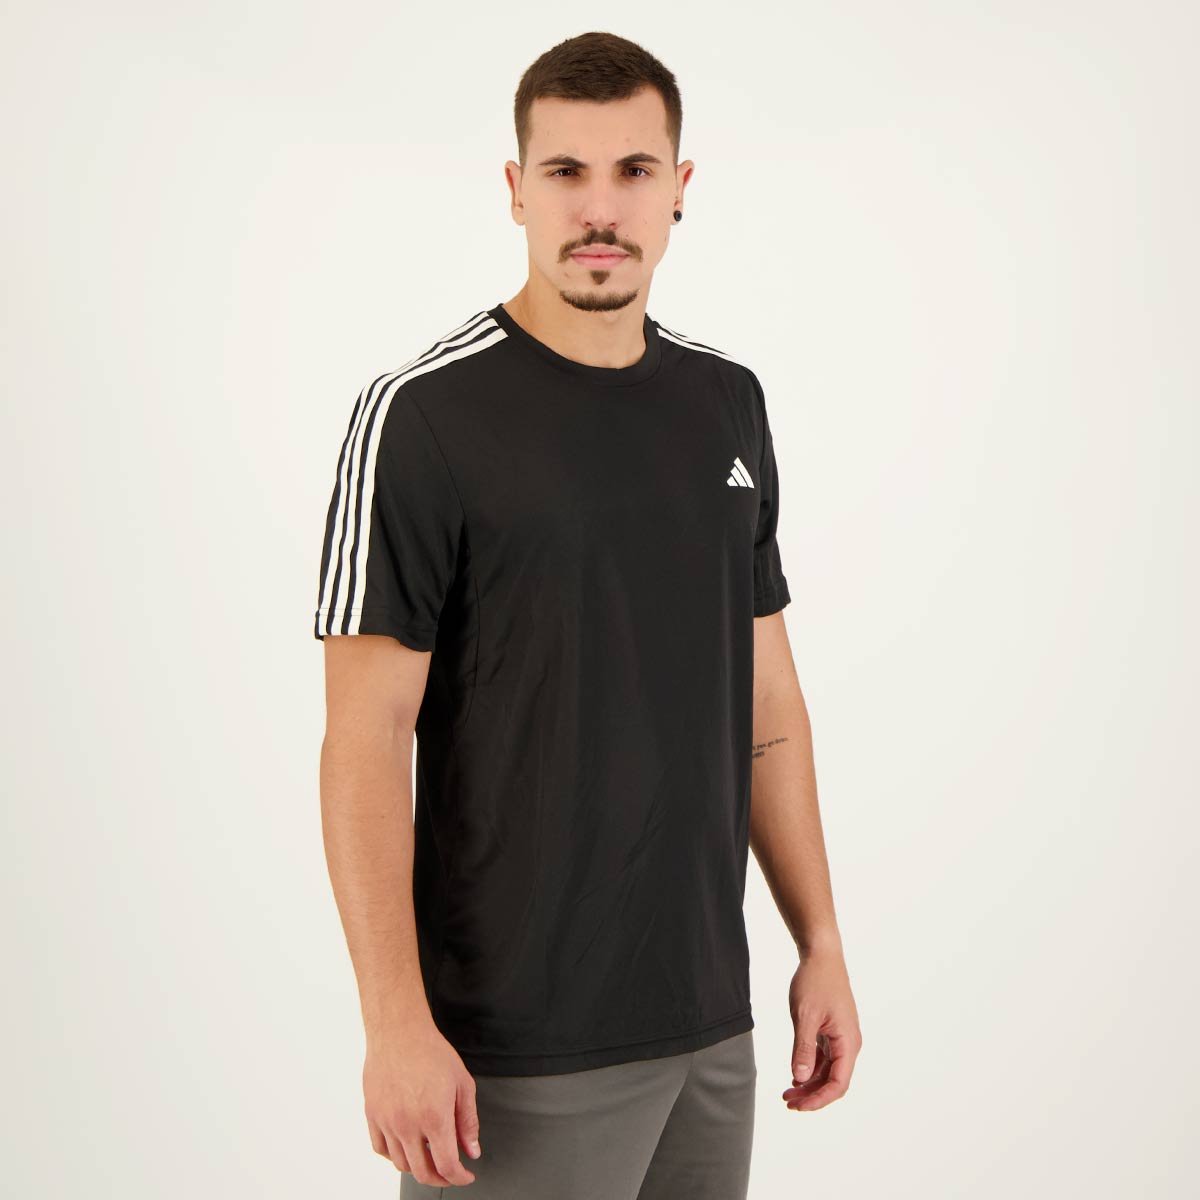 Camiseta Adidas Essentials 3 Listras Preta e Branca Preto 5